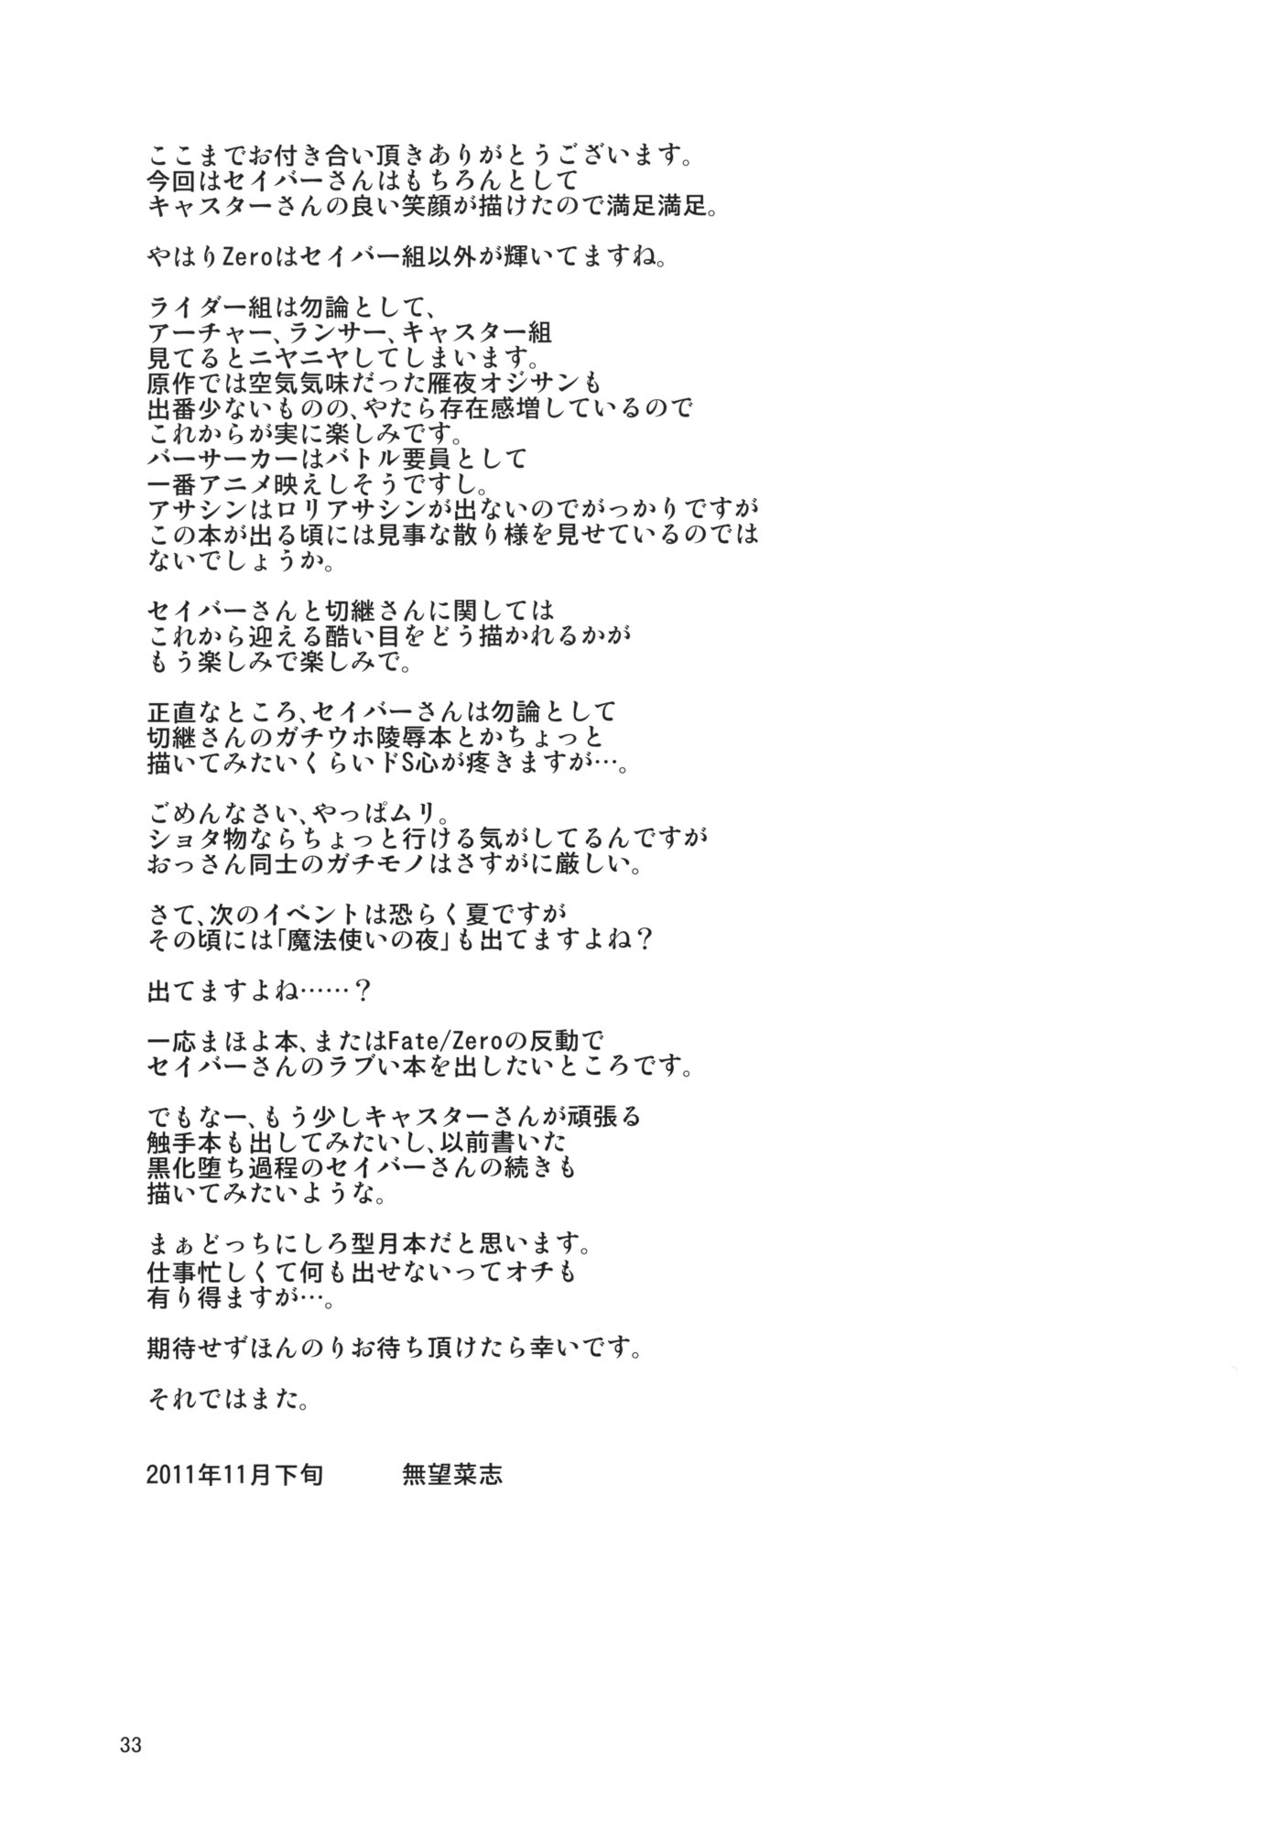 (C81) [RUBBISH選別隊 (無望菜志)] RE15 (Fate/Zero) [中国翻訳]